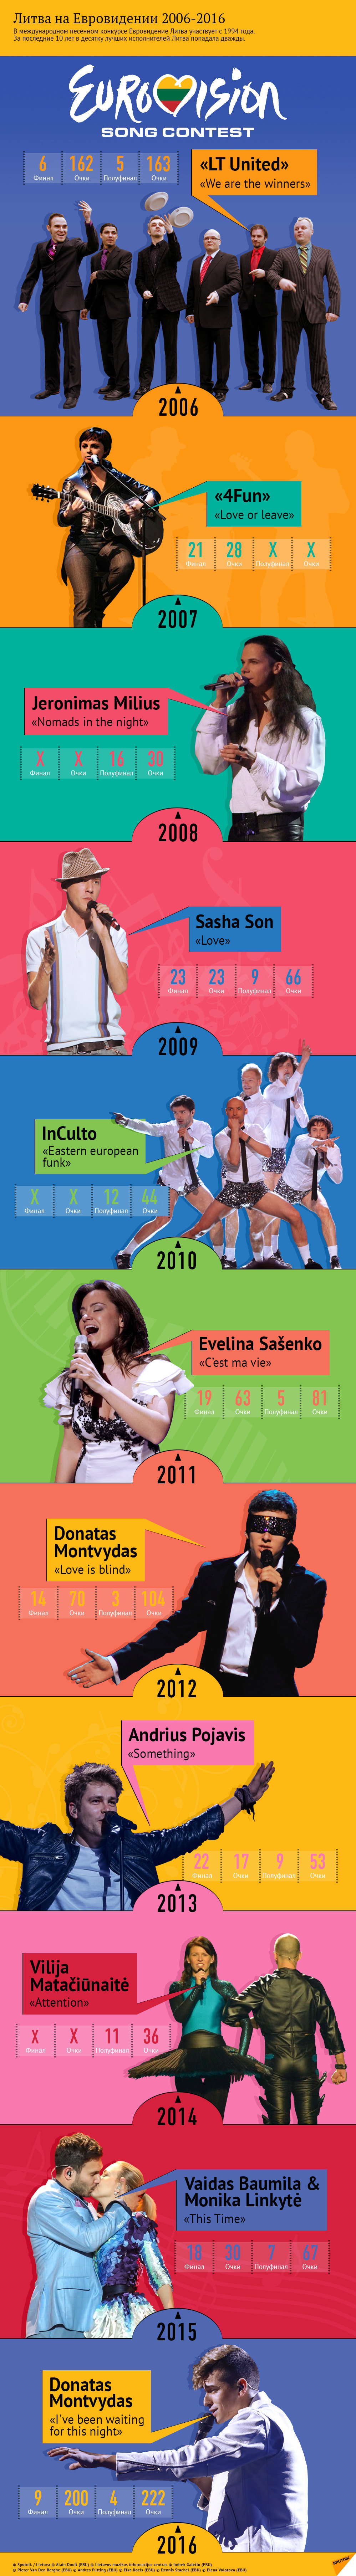 Литва на Евровидении в 2006-2016 годах - Sputnik Литва